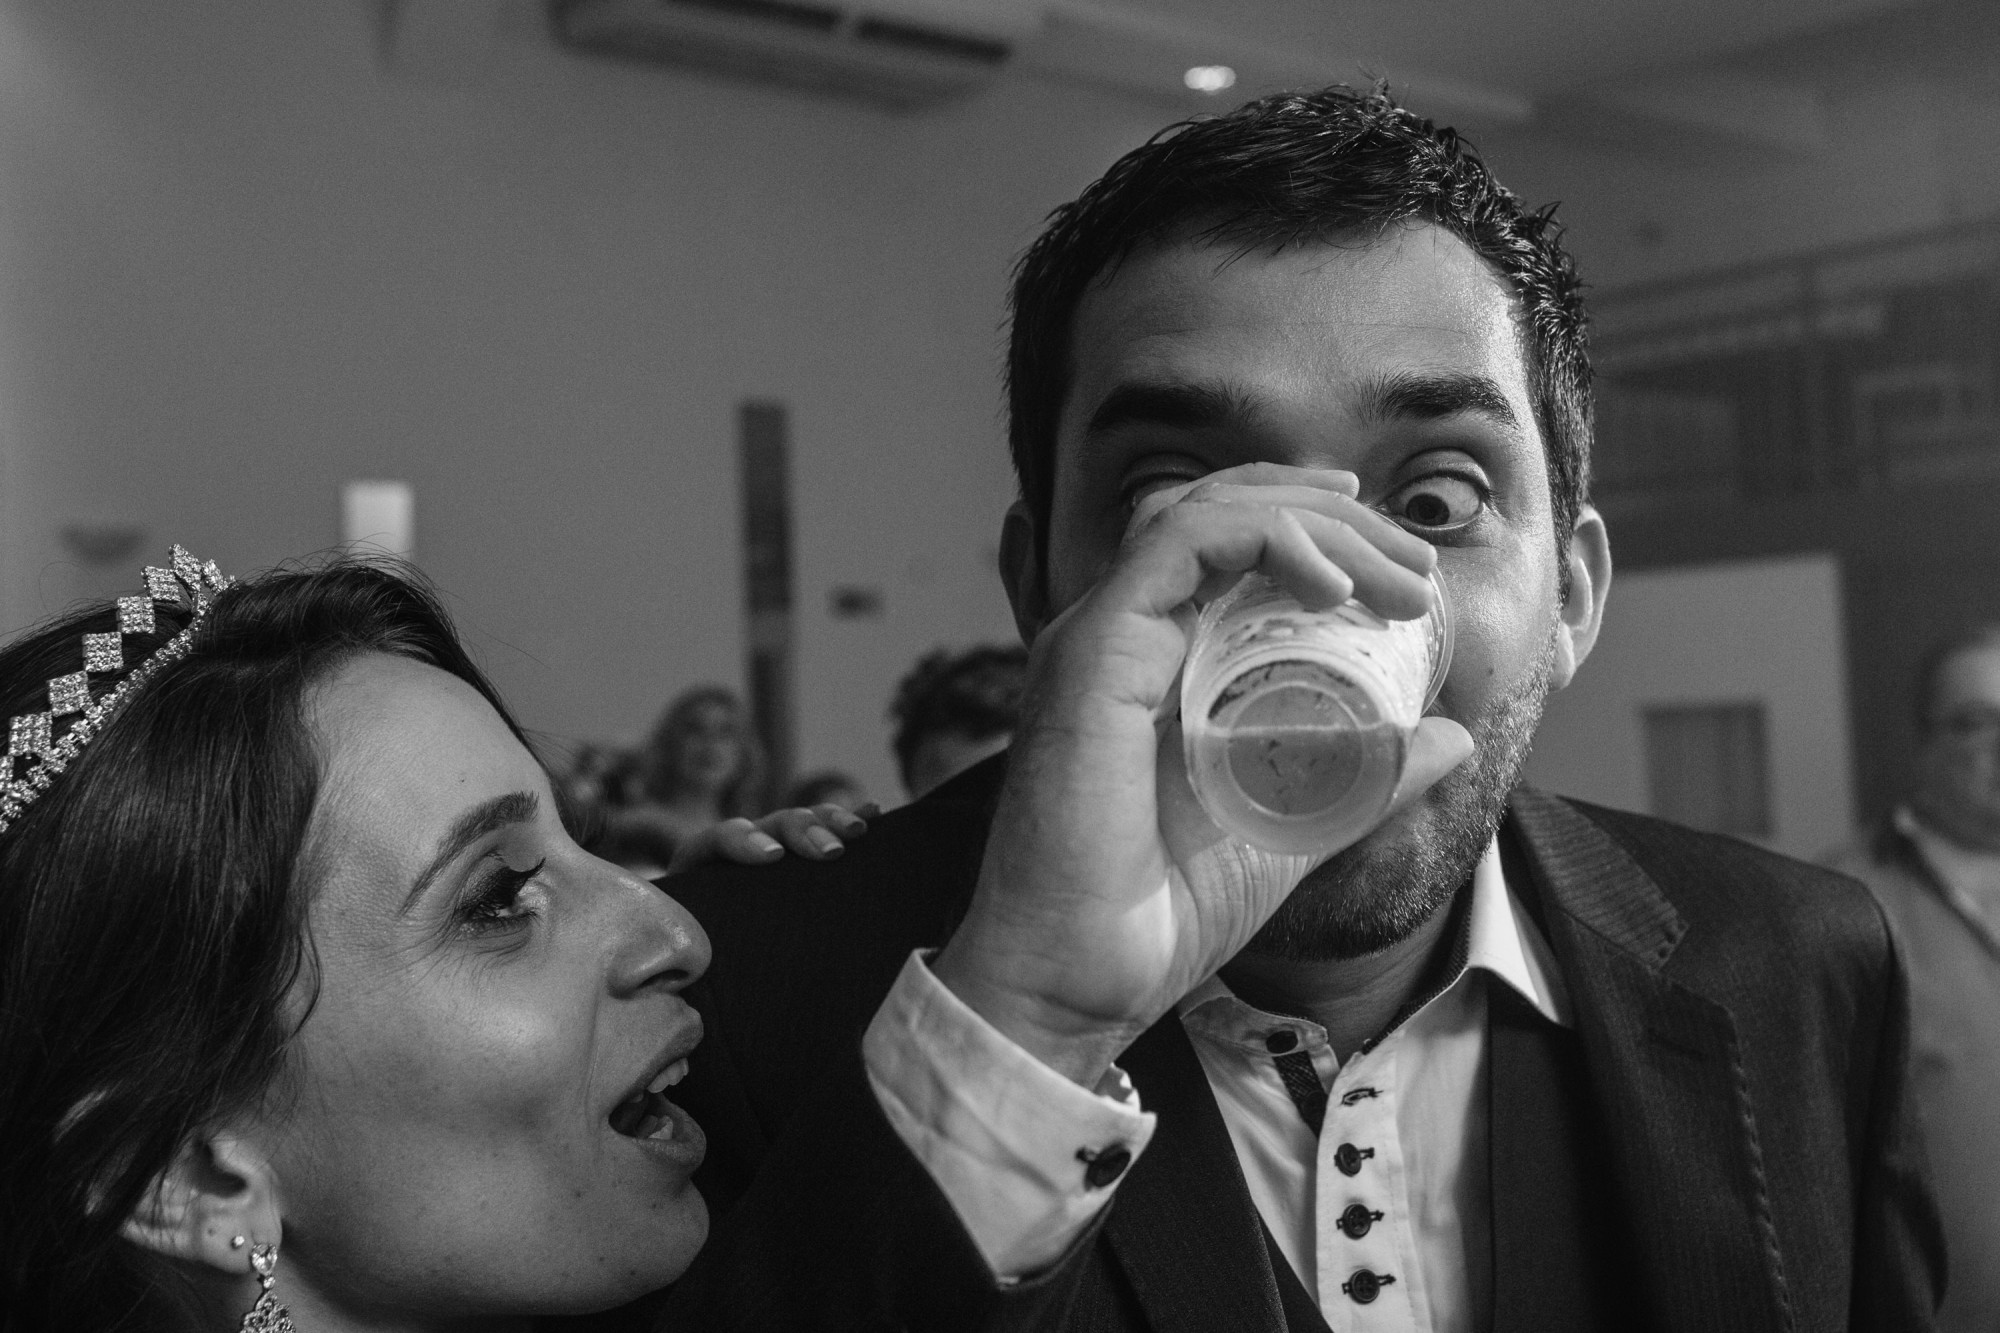 Camila e Guilherme Braga - Casamento em Maringa - PR por Lorran Souza e Léia Sotile - fotografo de casamentos00027